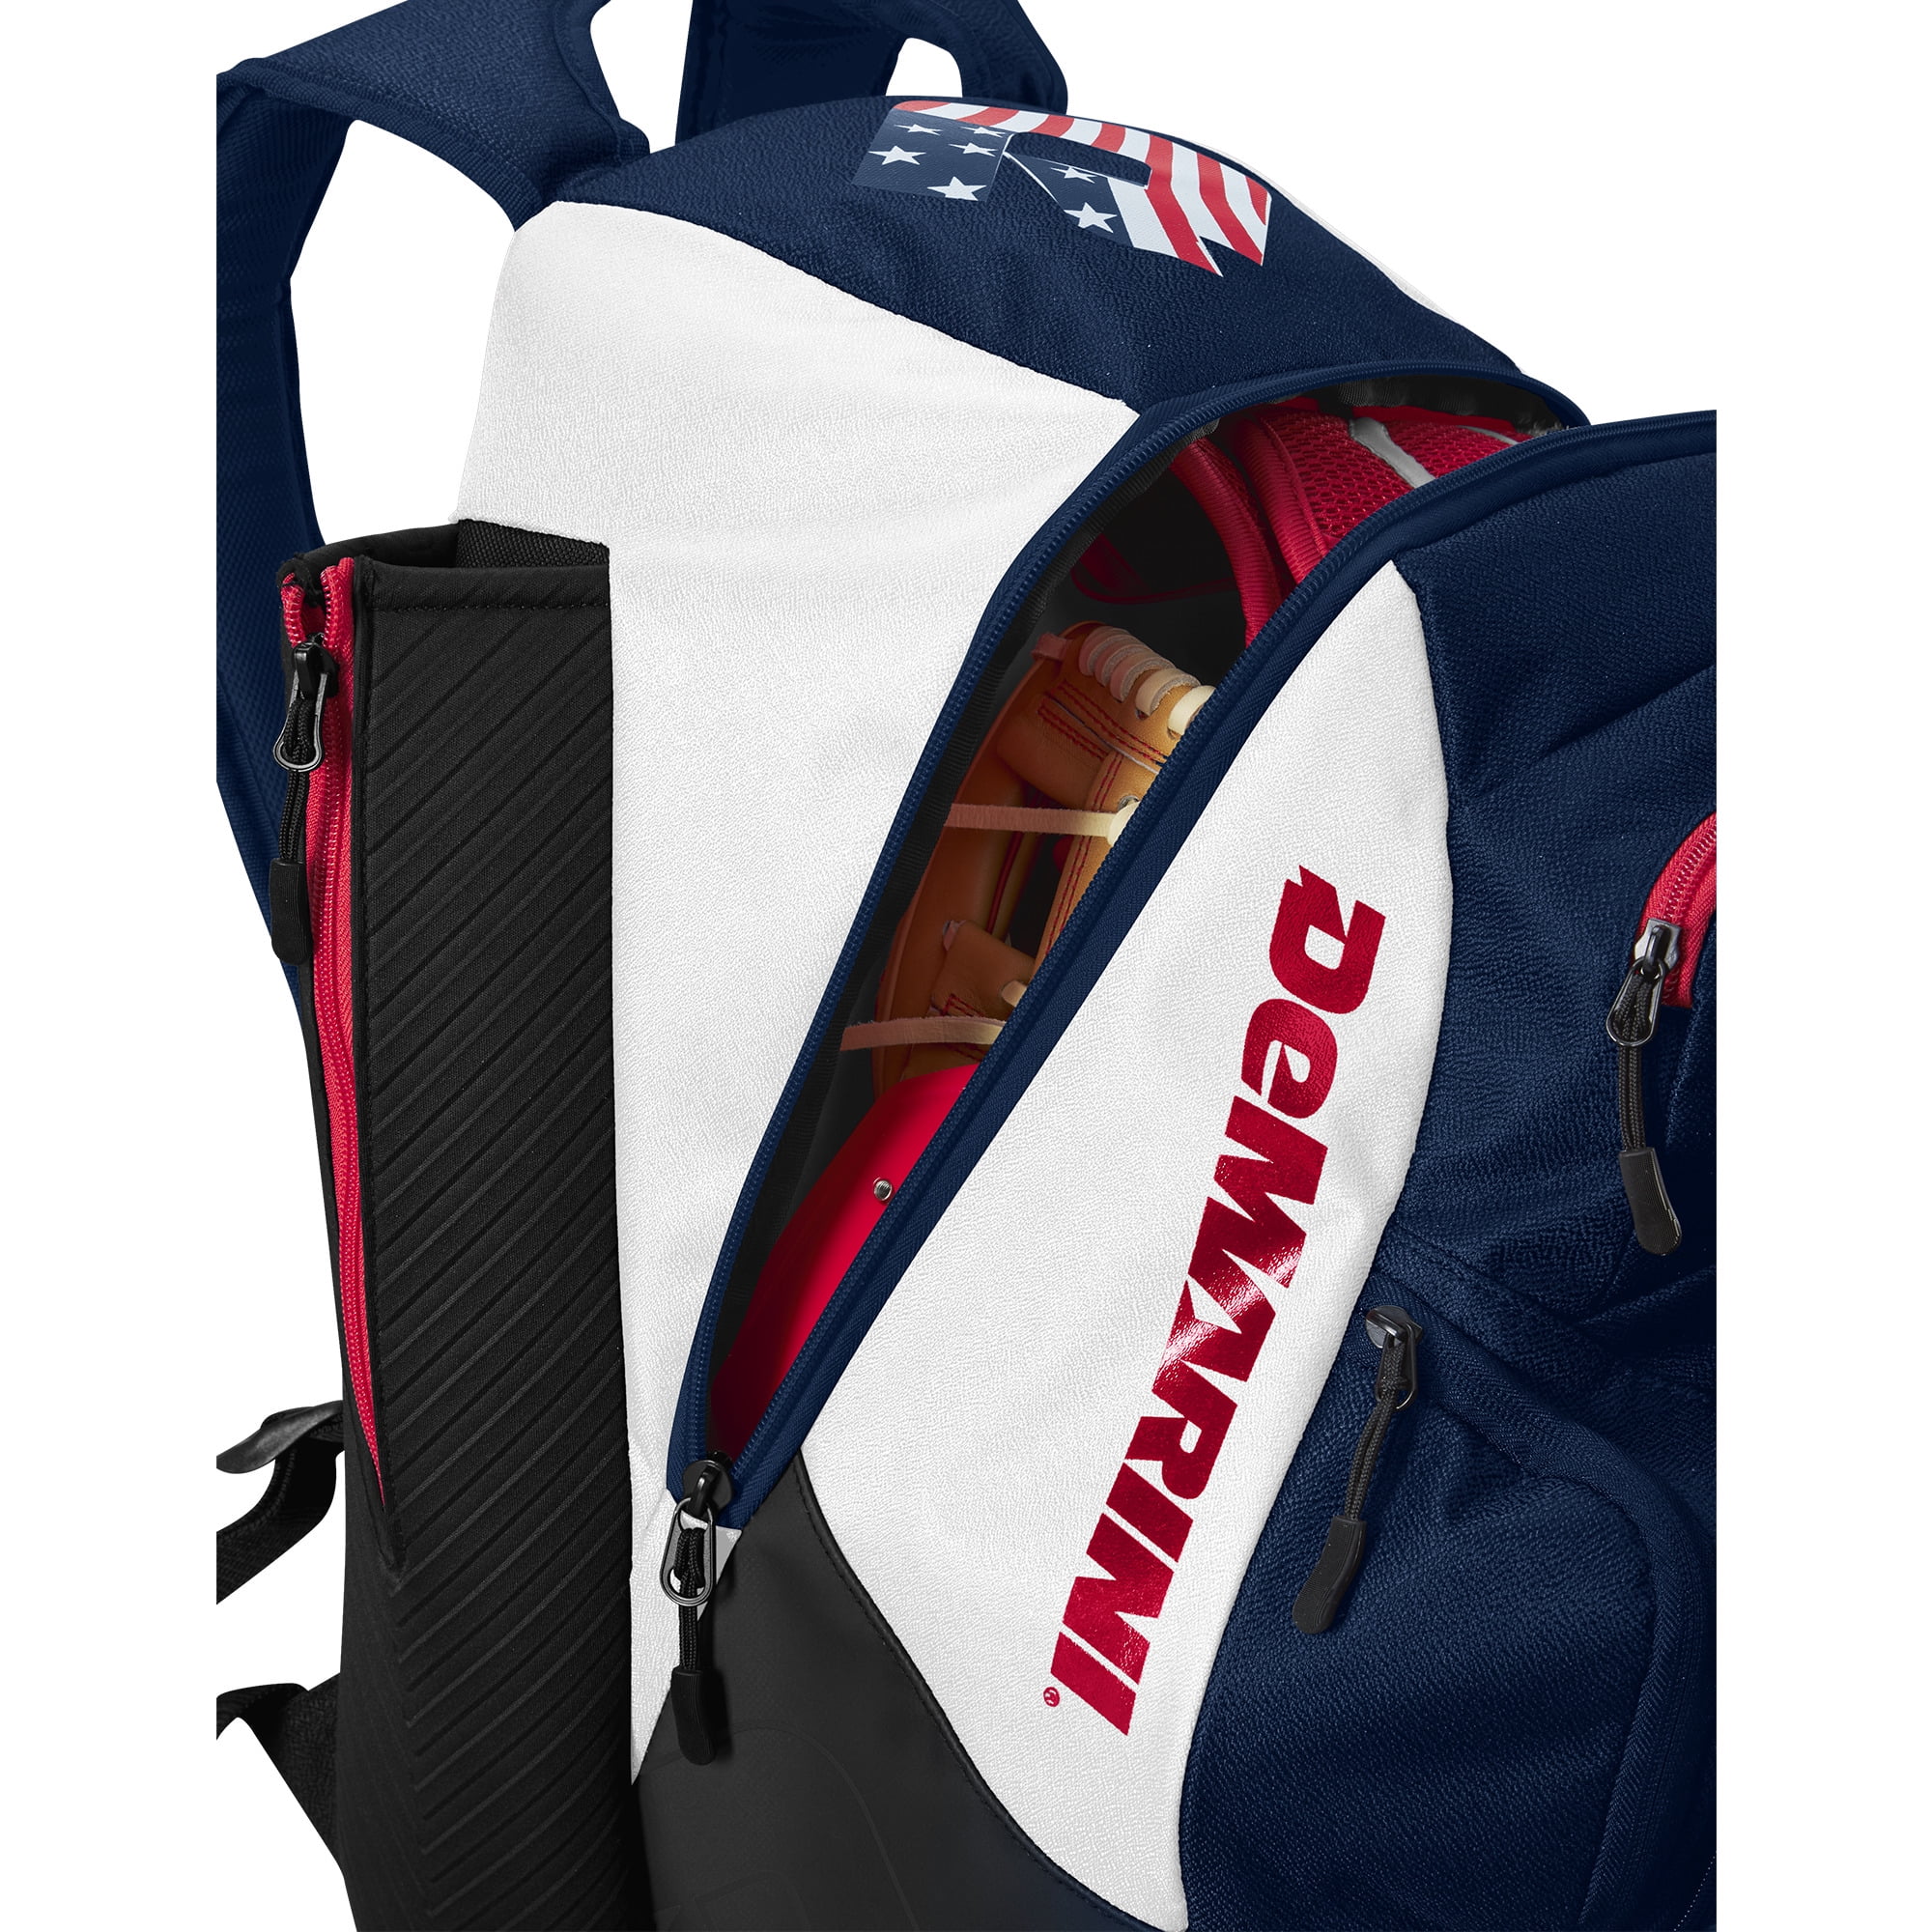 DeMarini Momentum 2.0 Series Baseball Softball Equipment Wheeled Bag | eBay